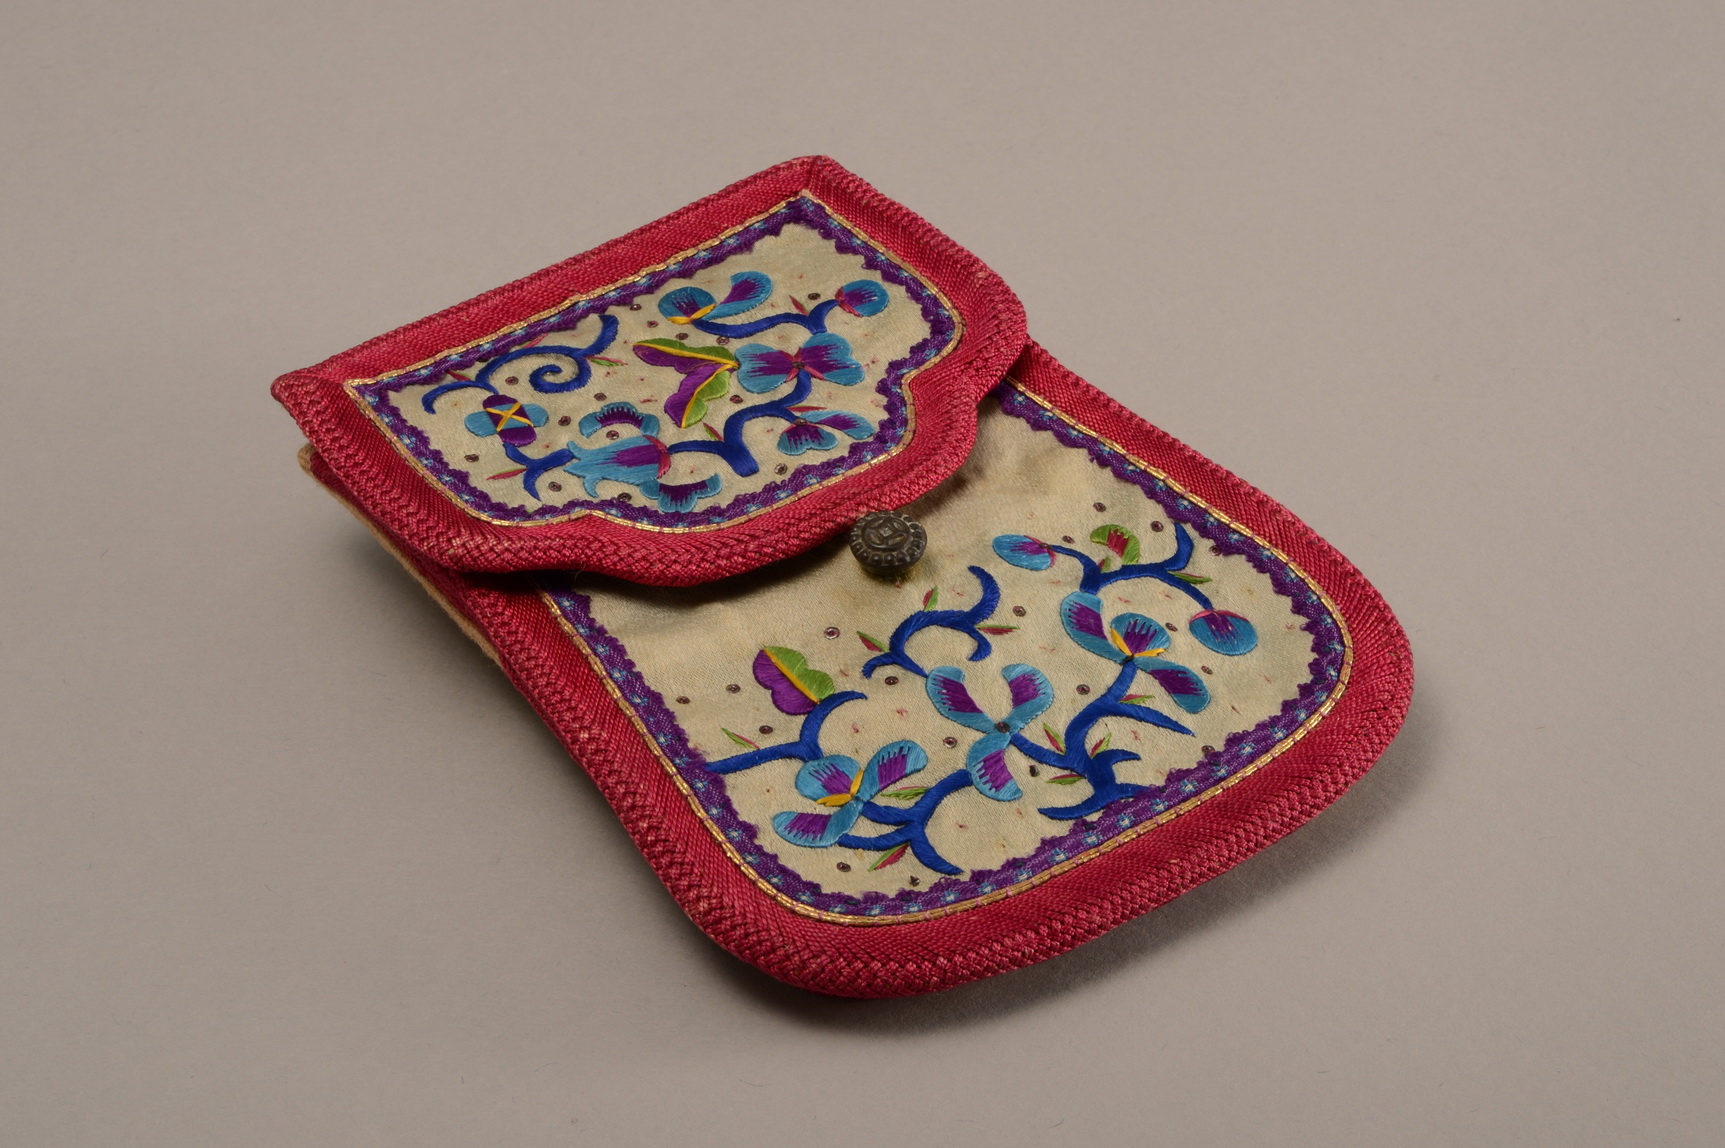 1930年代盧慕貞親手為女兒孫琬縫製的繡花荷包